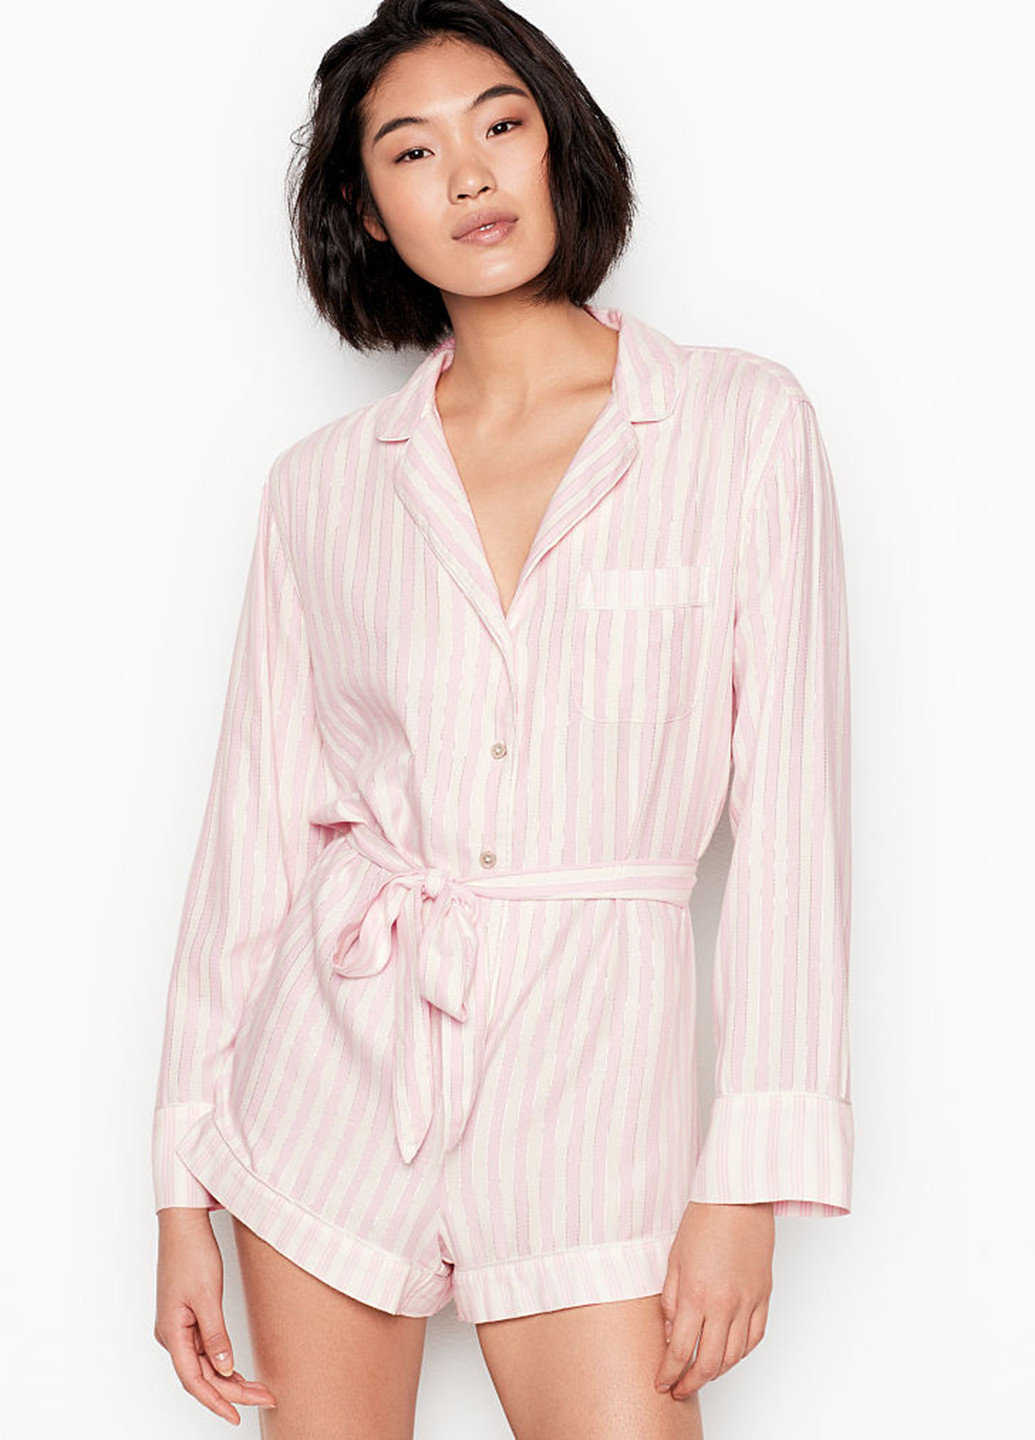 Комбінезон Victoria's Secret комбінезон-шорти смужка світло-рожевий домашній бавовна, фланель